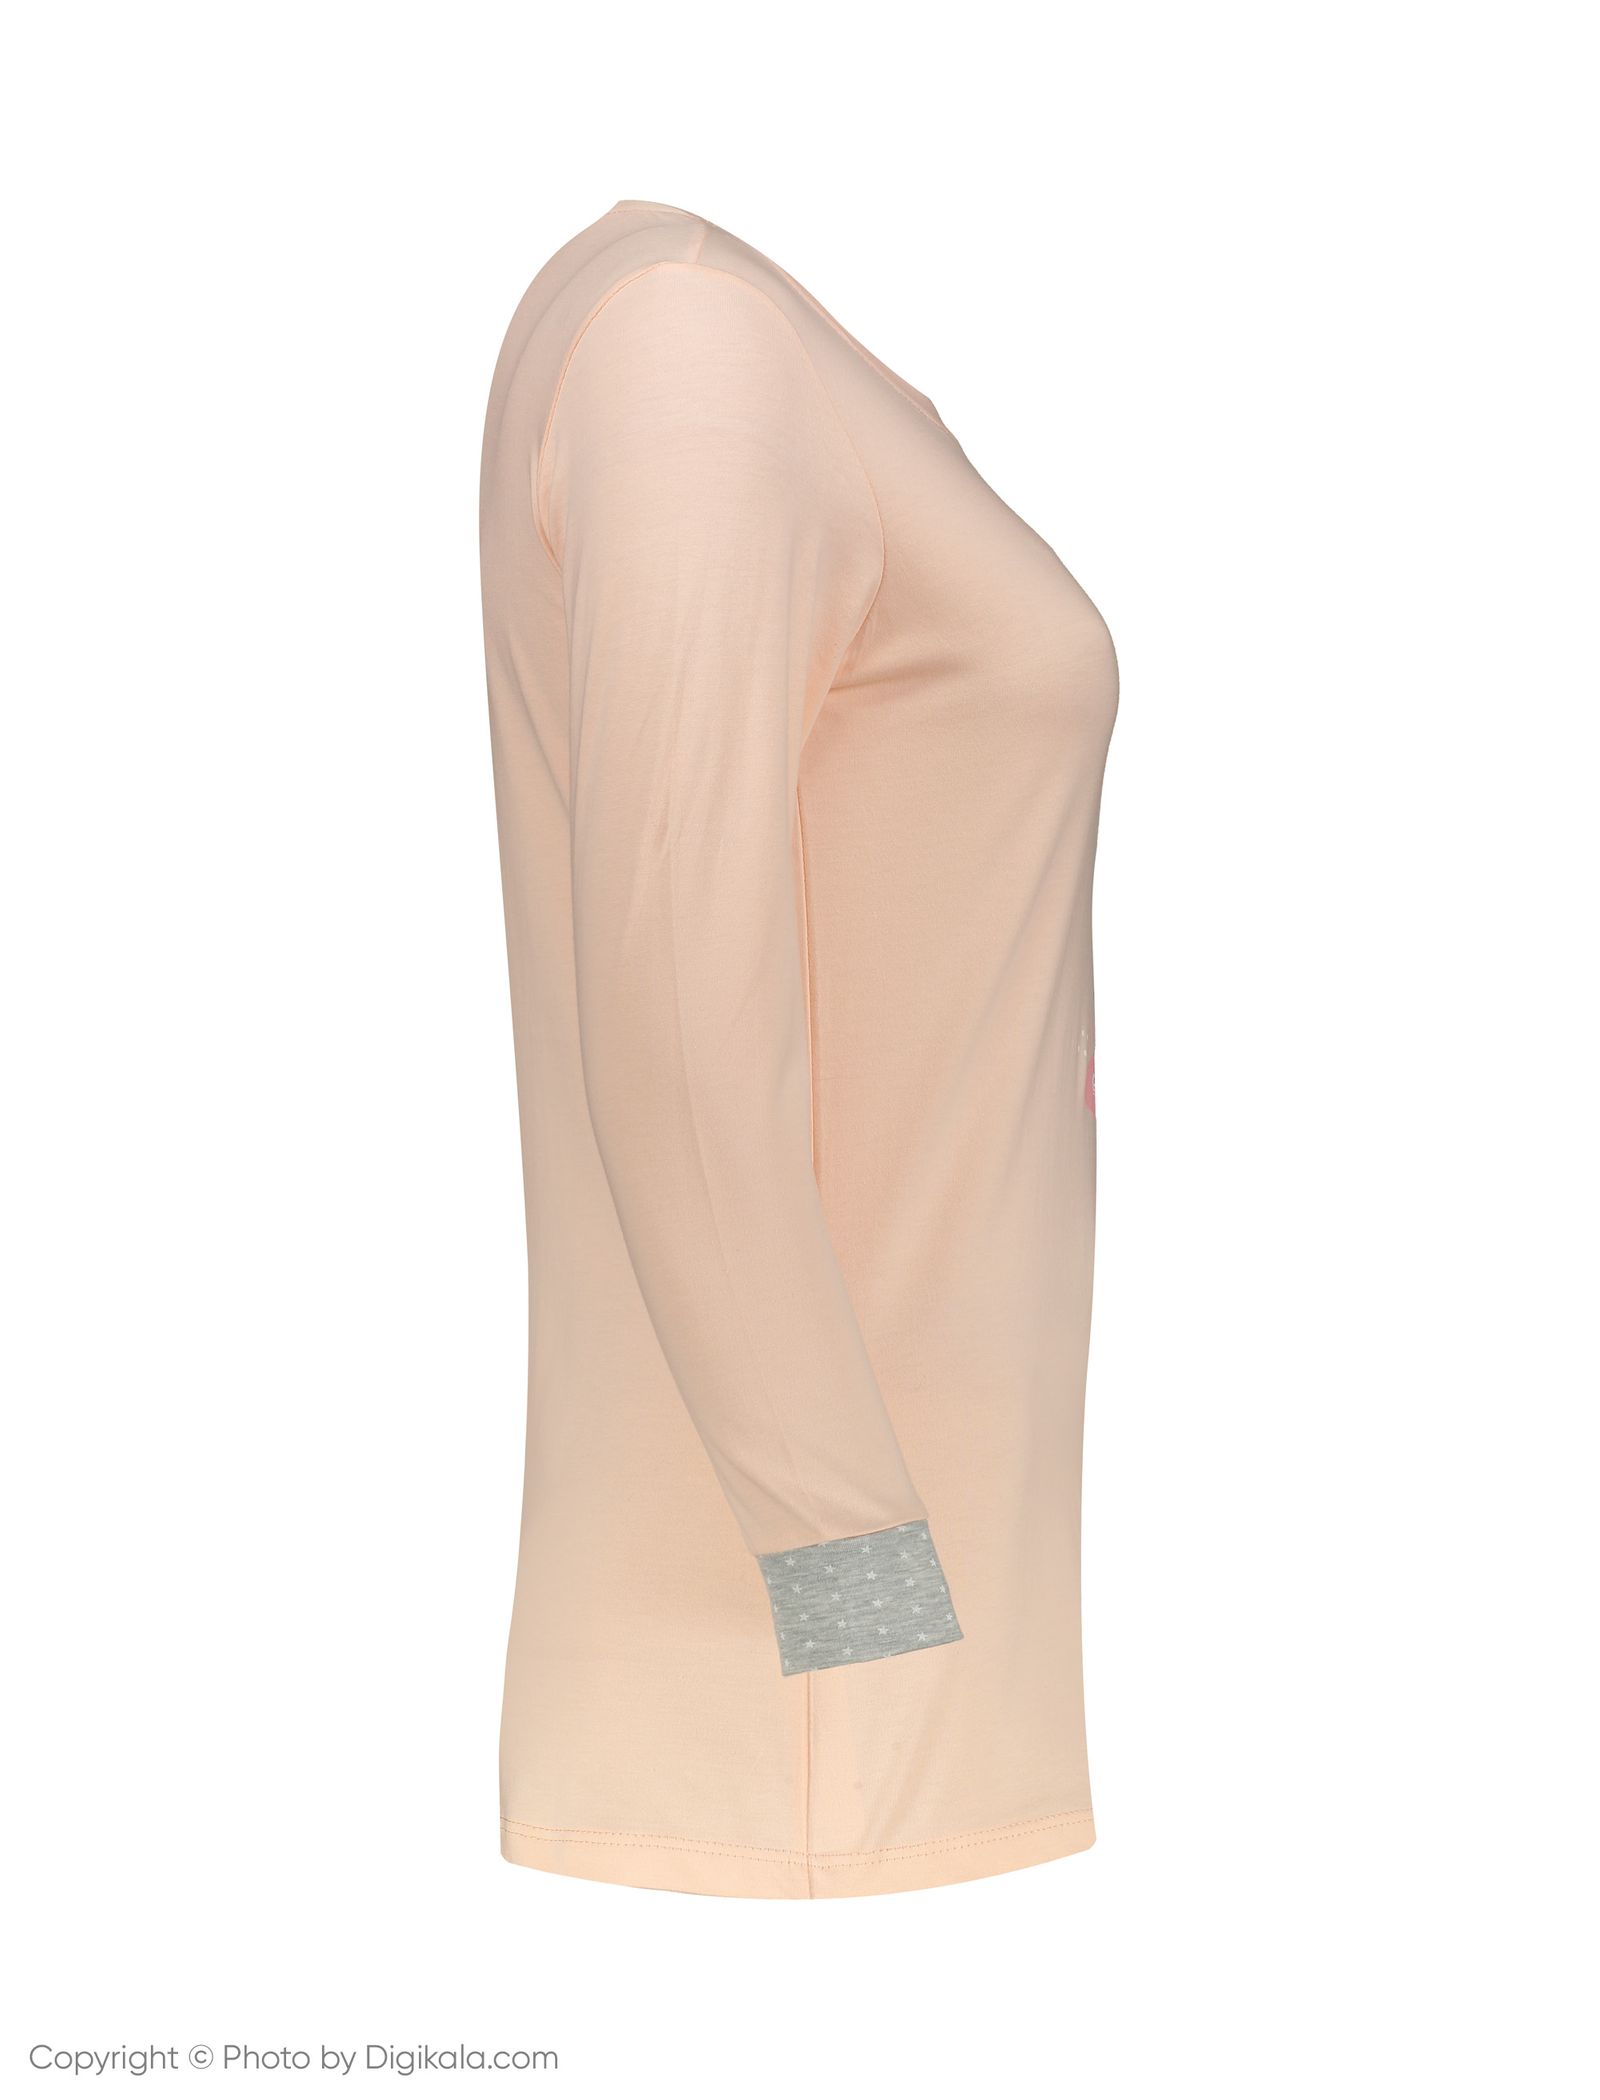 ست تی شرت و شلوار راحتی زنانه ناربن مدل 1521151-21 - سالمون روشن - 4